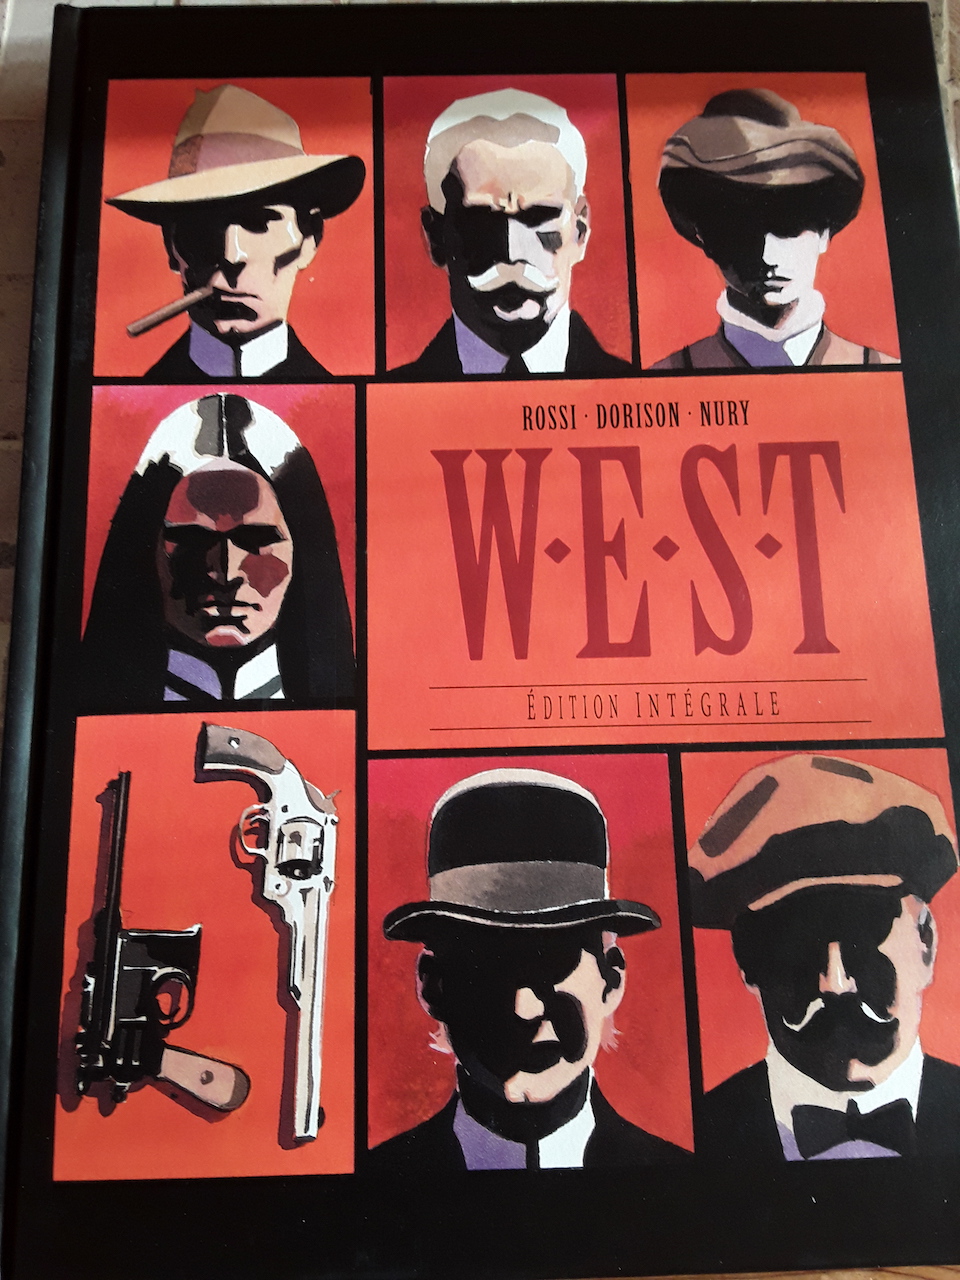 Lonesome : Une nouvelle série Western de Yves Swolfs et W.E.S.T. l'intégrale West_110